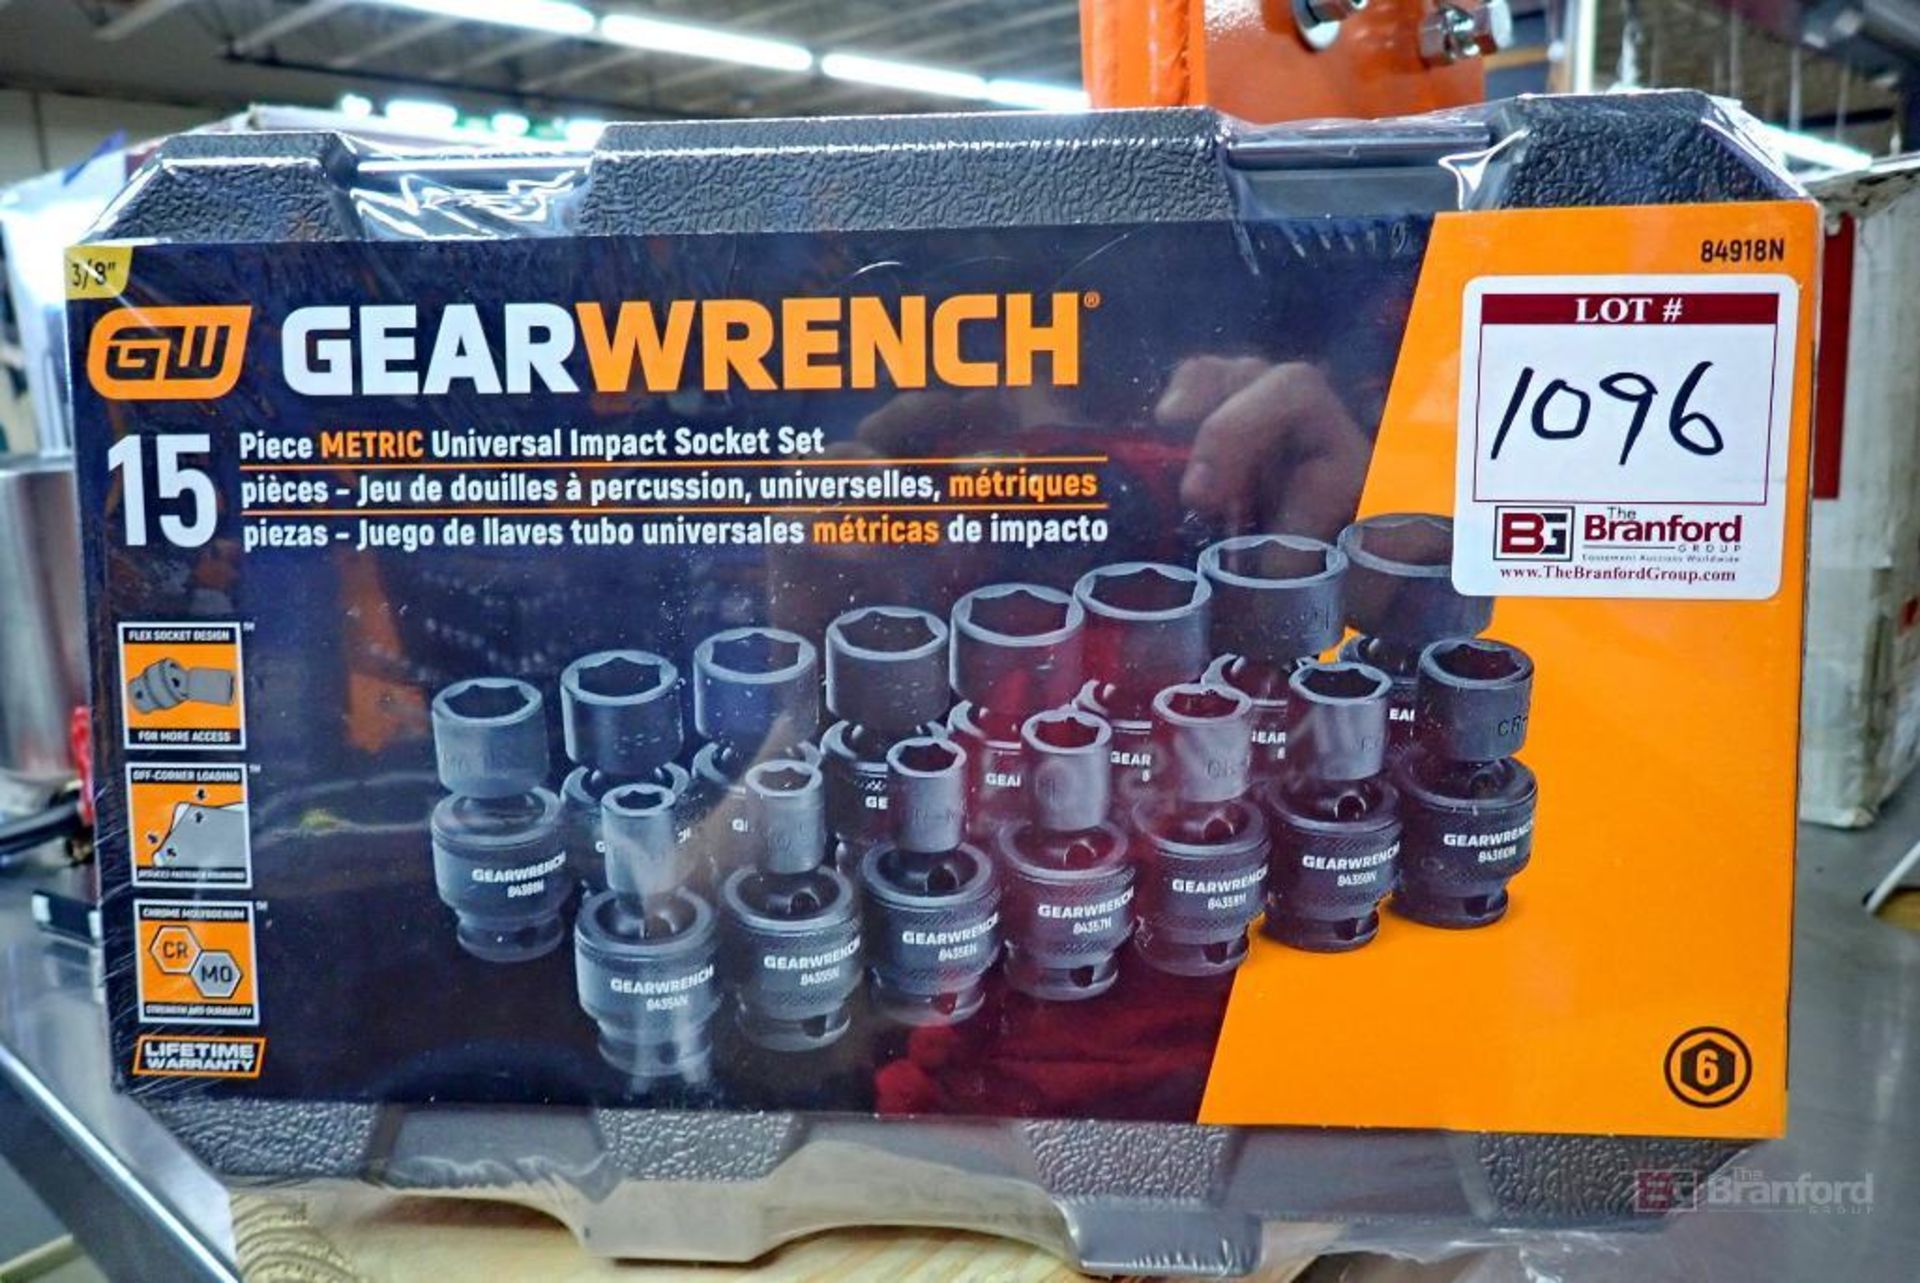 GearWrench 84918N 15 Pc. Metric Universal Impact Socket Set - Image 4 of 4